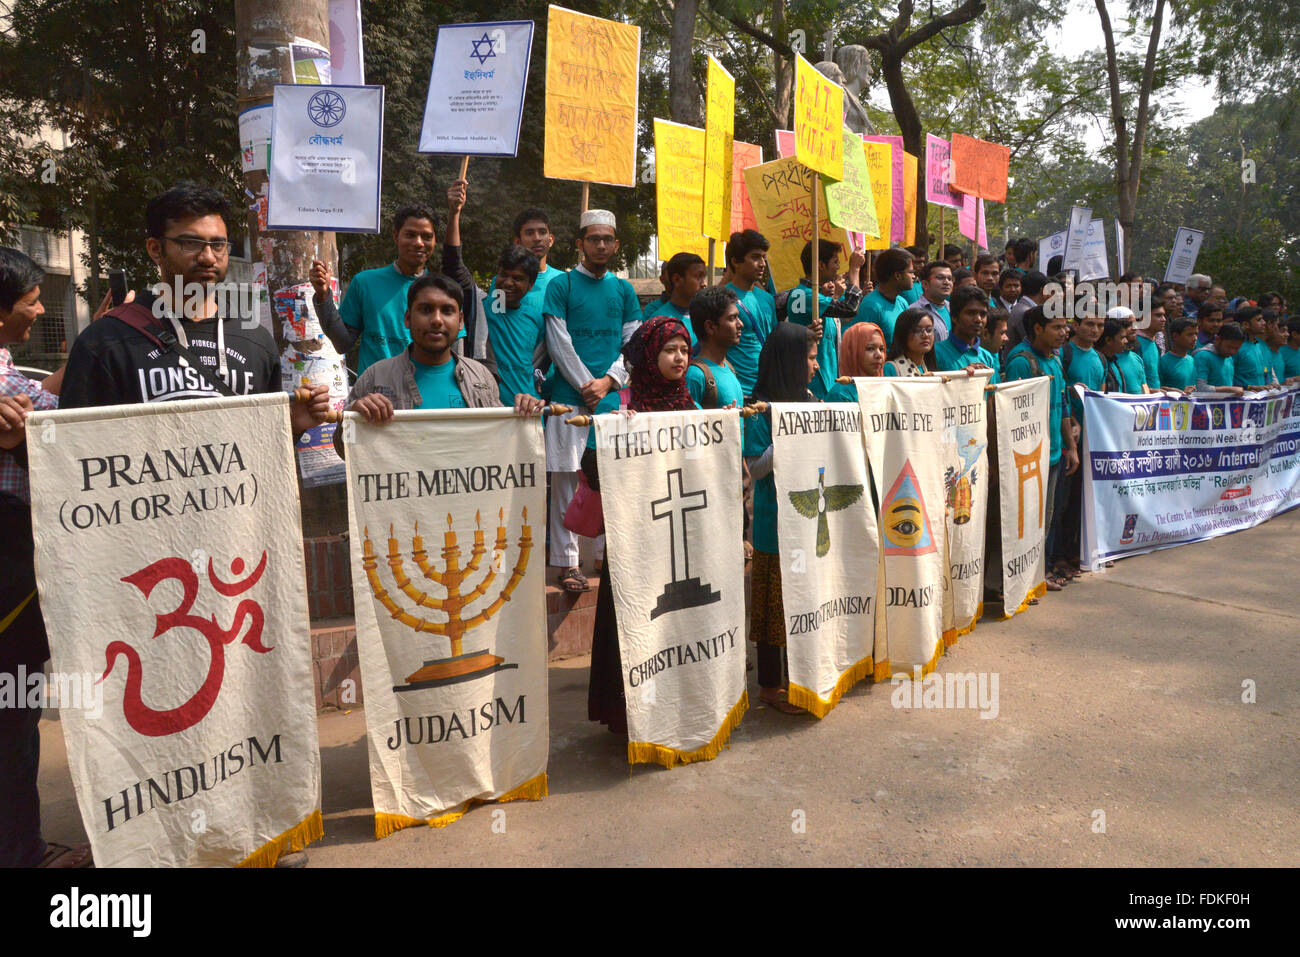 Centro para el diálogo interreligioso e intercultural y el Departamento de las religiones del mundo y de la cultura, de la Universidad de Dhaka, organizaron conjuntamente un rally Foto de stock